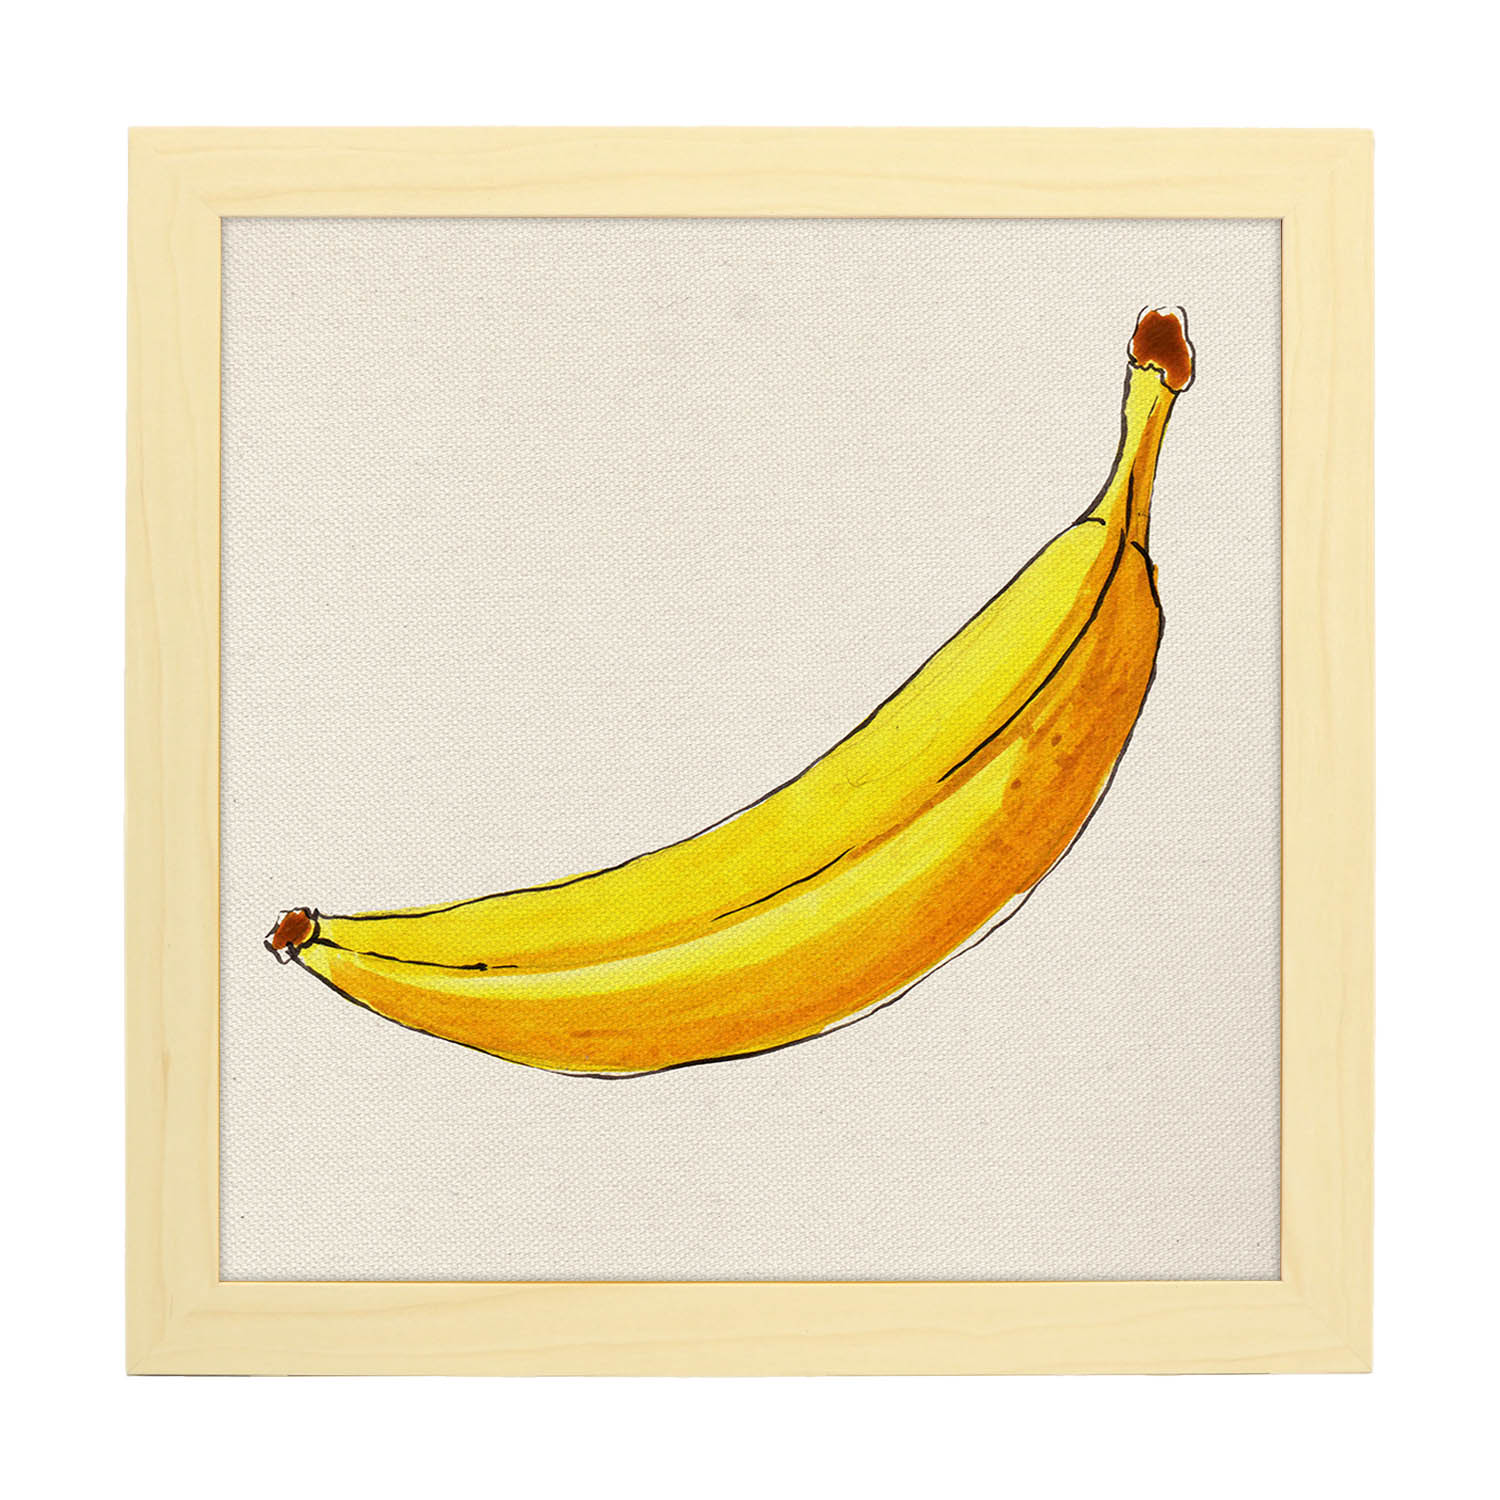 Poster cuadrado de Banana solitaria. Lámina de frutas y verduras de forma cuadrada, ilustrada con dibujos a color.-Artwork-Nacnic-20x20 cm-Marco Madera clara-Nacnic Estudio SL